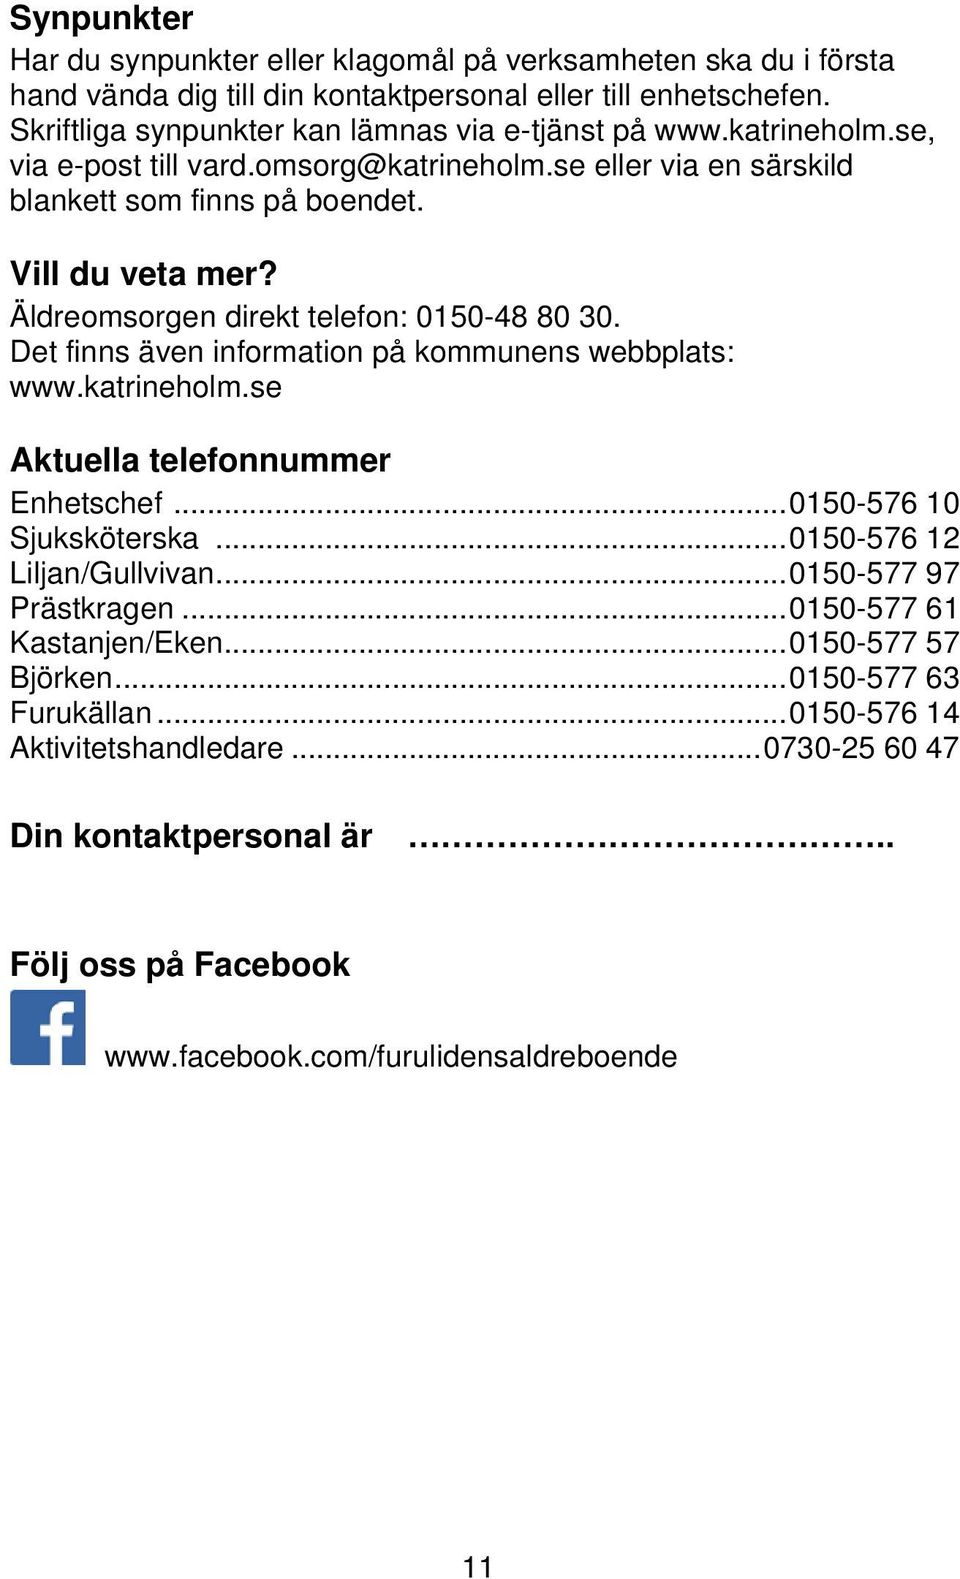 Det finns även information på kommunens webbplats: www.katrineholm.se Aktuella telefonnummer Enhetschef... 0150-576 10 Sjuksköterska... 0150-576 12 Liljan/Gullvivan... 0150-577 97 Prästkragen.